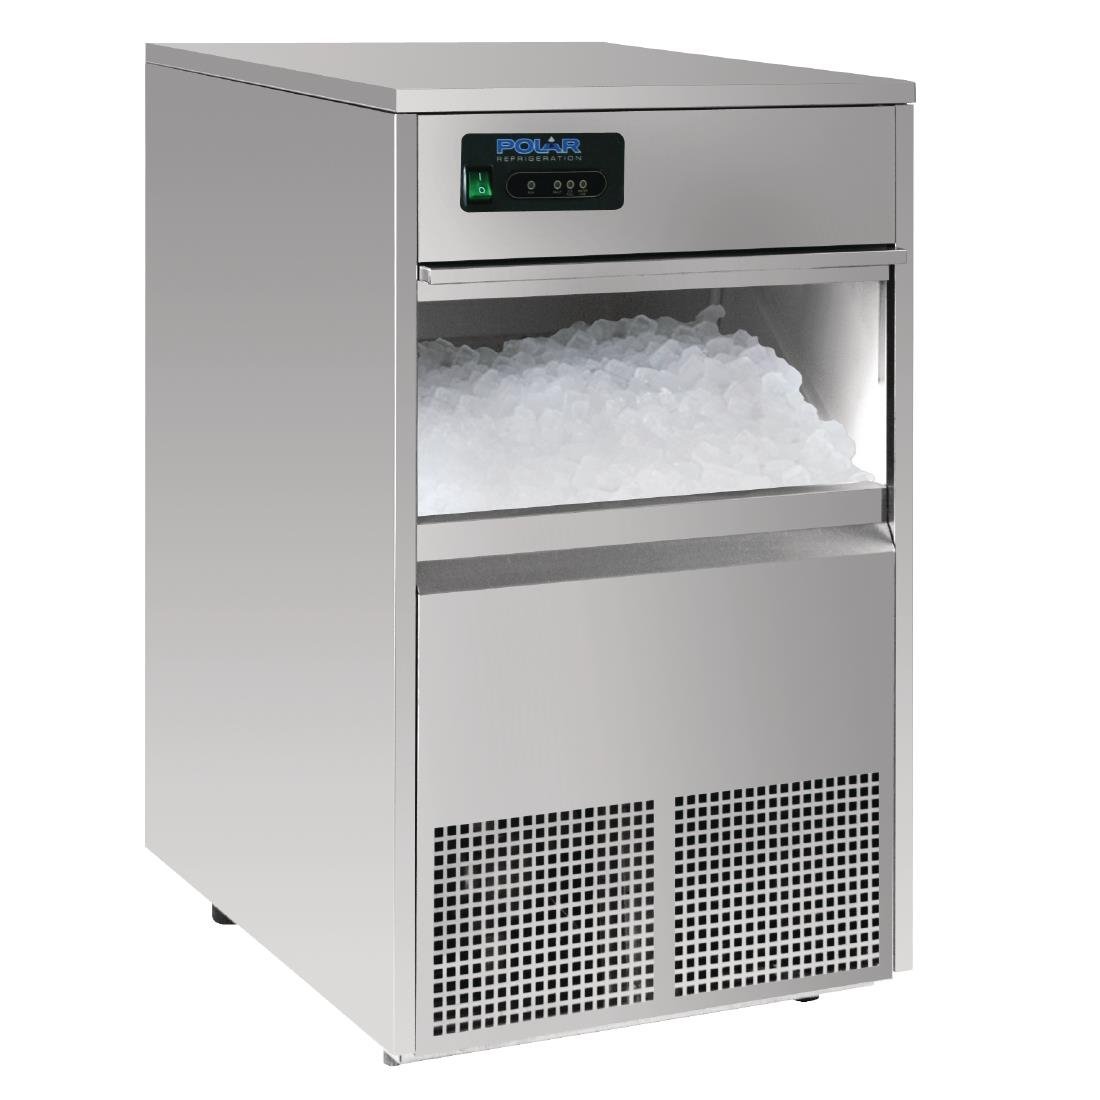 Machine à glaçons refroidissement eau 30KG/24H 